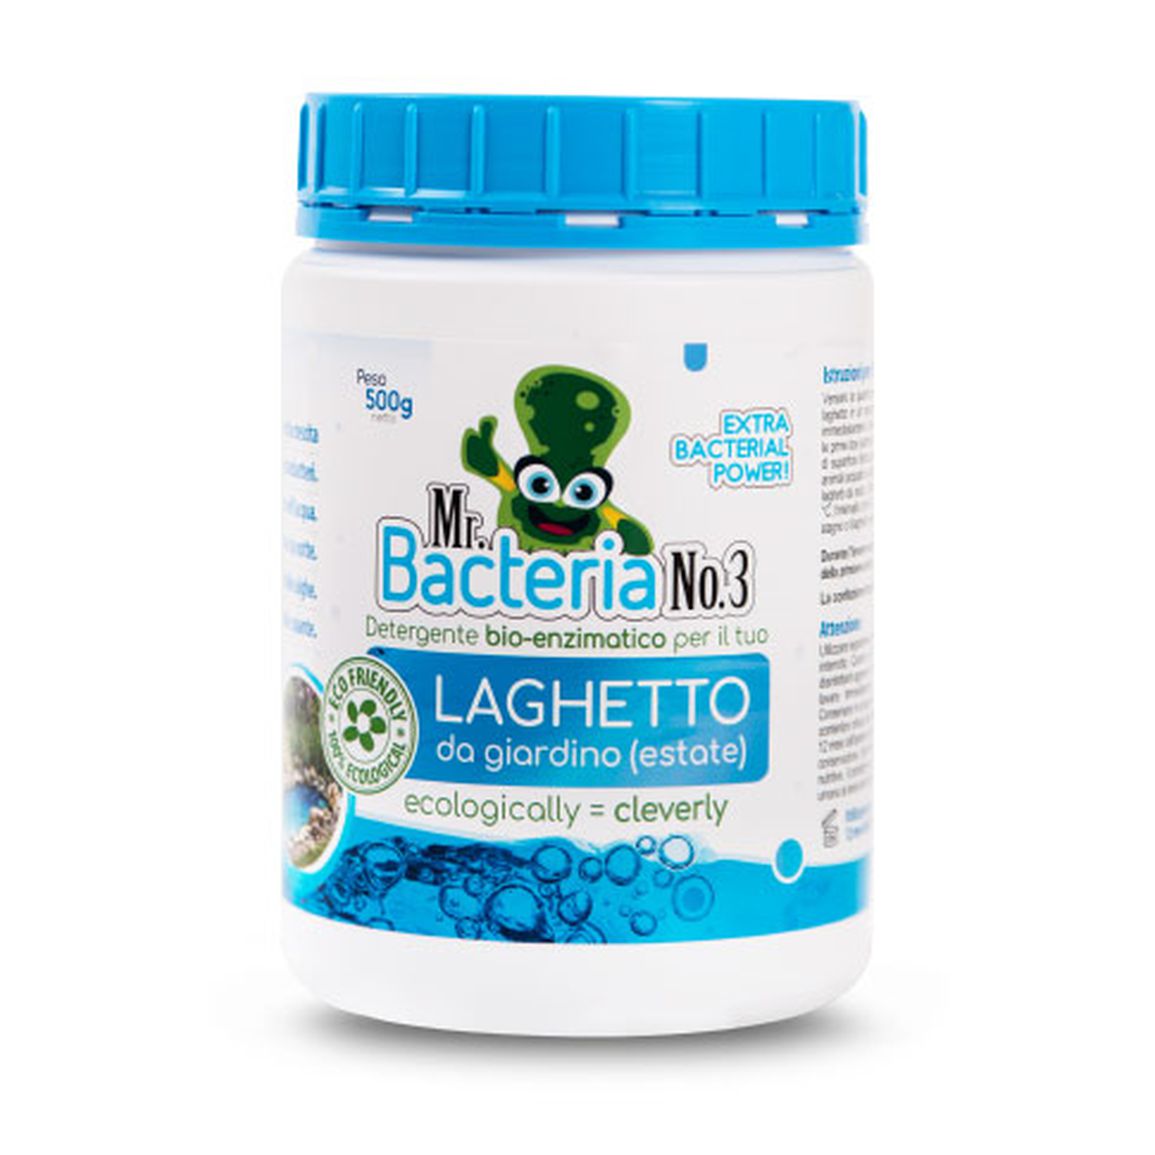 Detergente bio-enzimatico per il tuo LAGHETTO da giardino (estate) 500g (Batteri per laghetto)